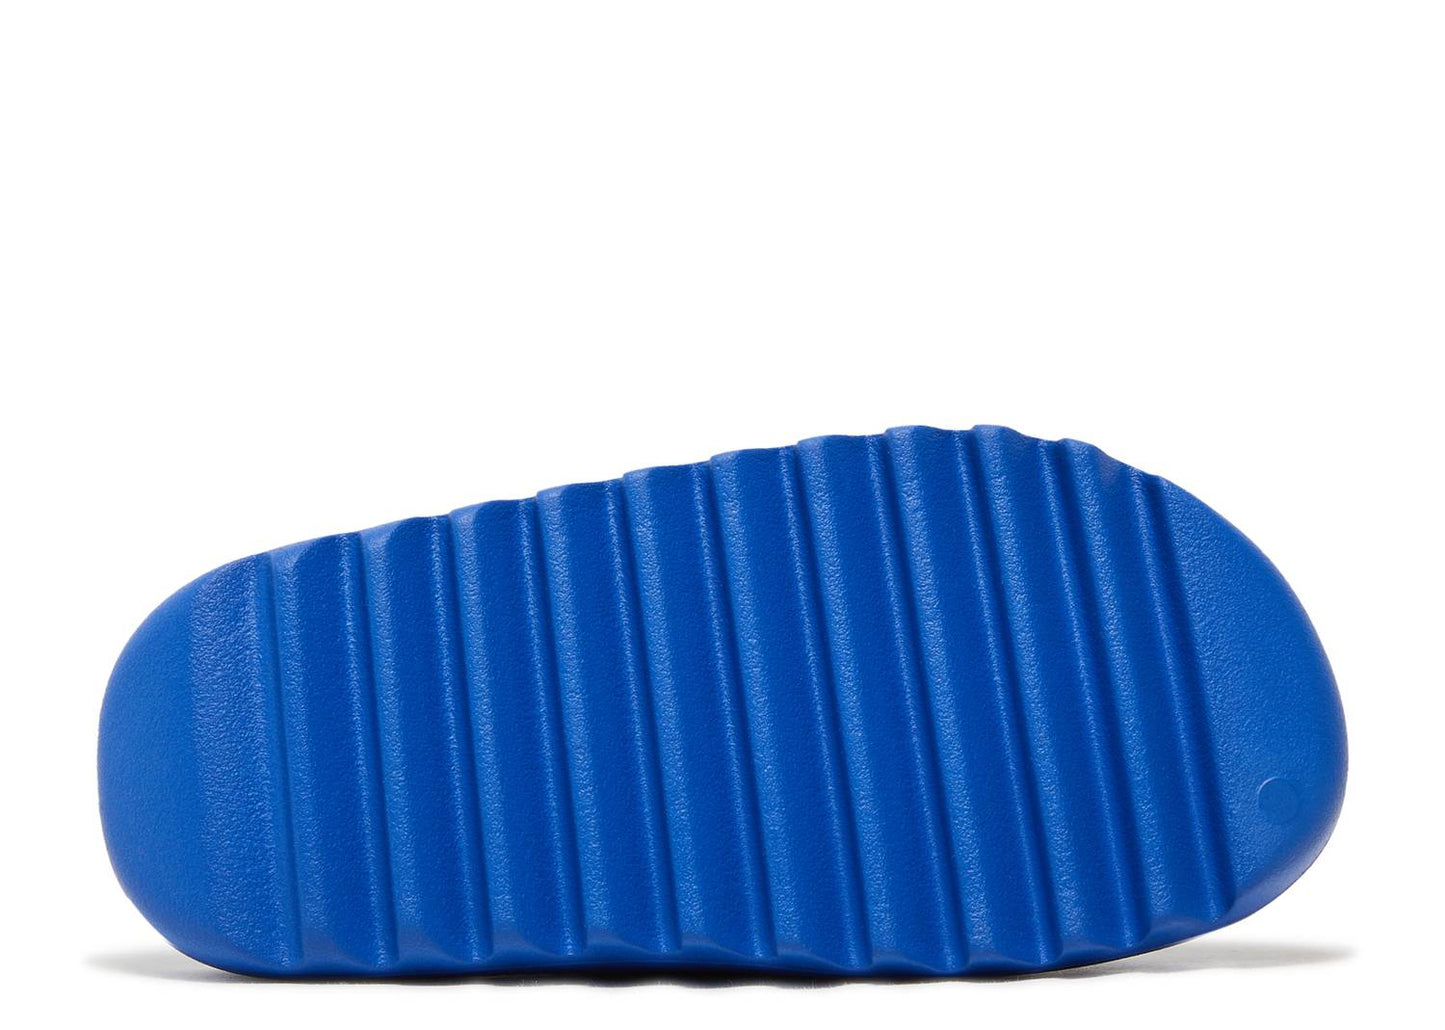 Adidas Yeezy Slide “Azure”